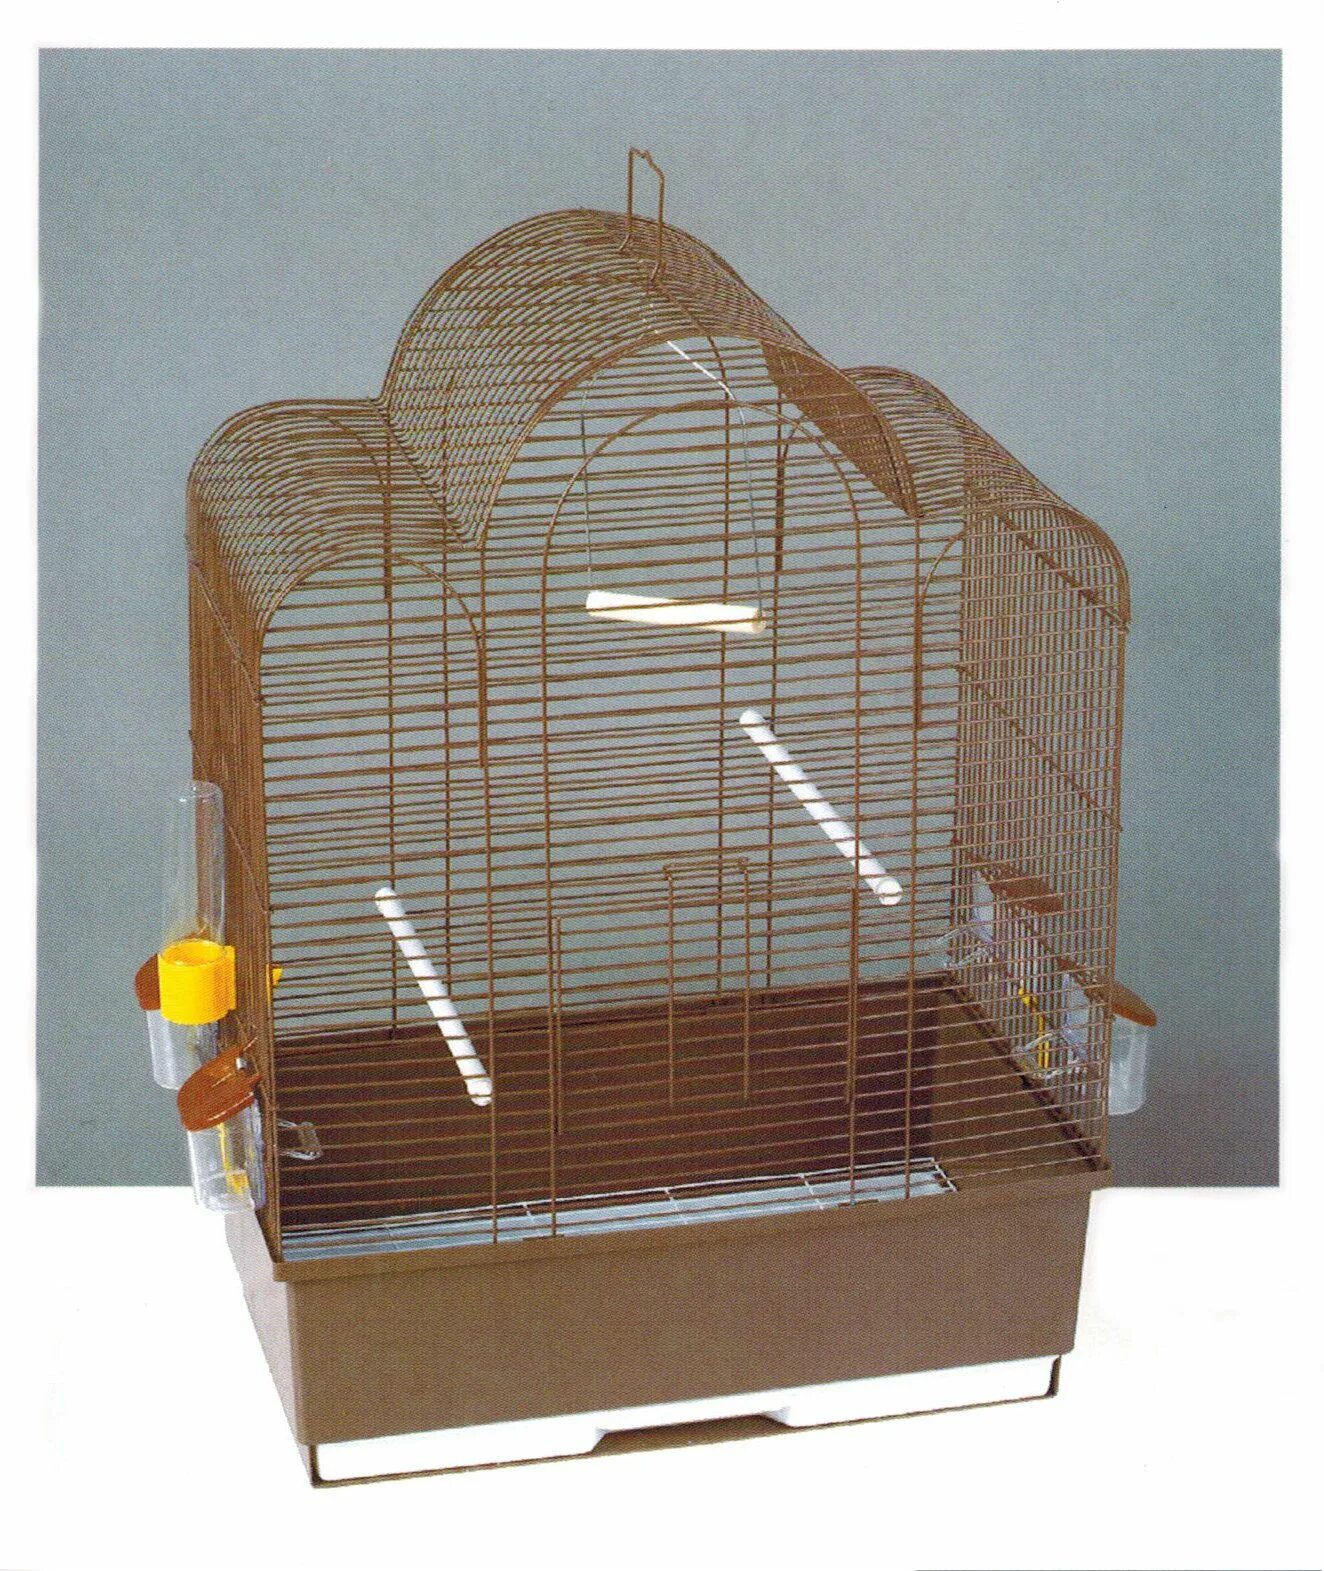 Авито клетки для птиц. Клетка для птиц Tesoro в3121 37 х 28 х 48 см. Petmax клетка для птиц 61,2x45,2x82см. Tesoro e44 клетка. Клетка Тесоро для птиц.